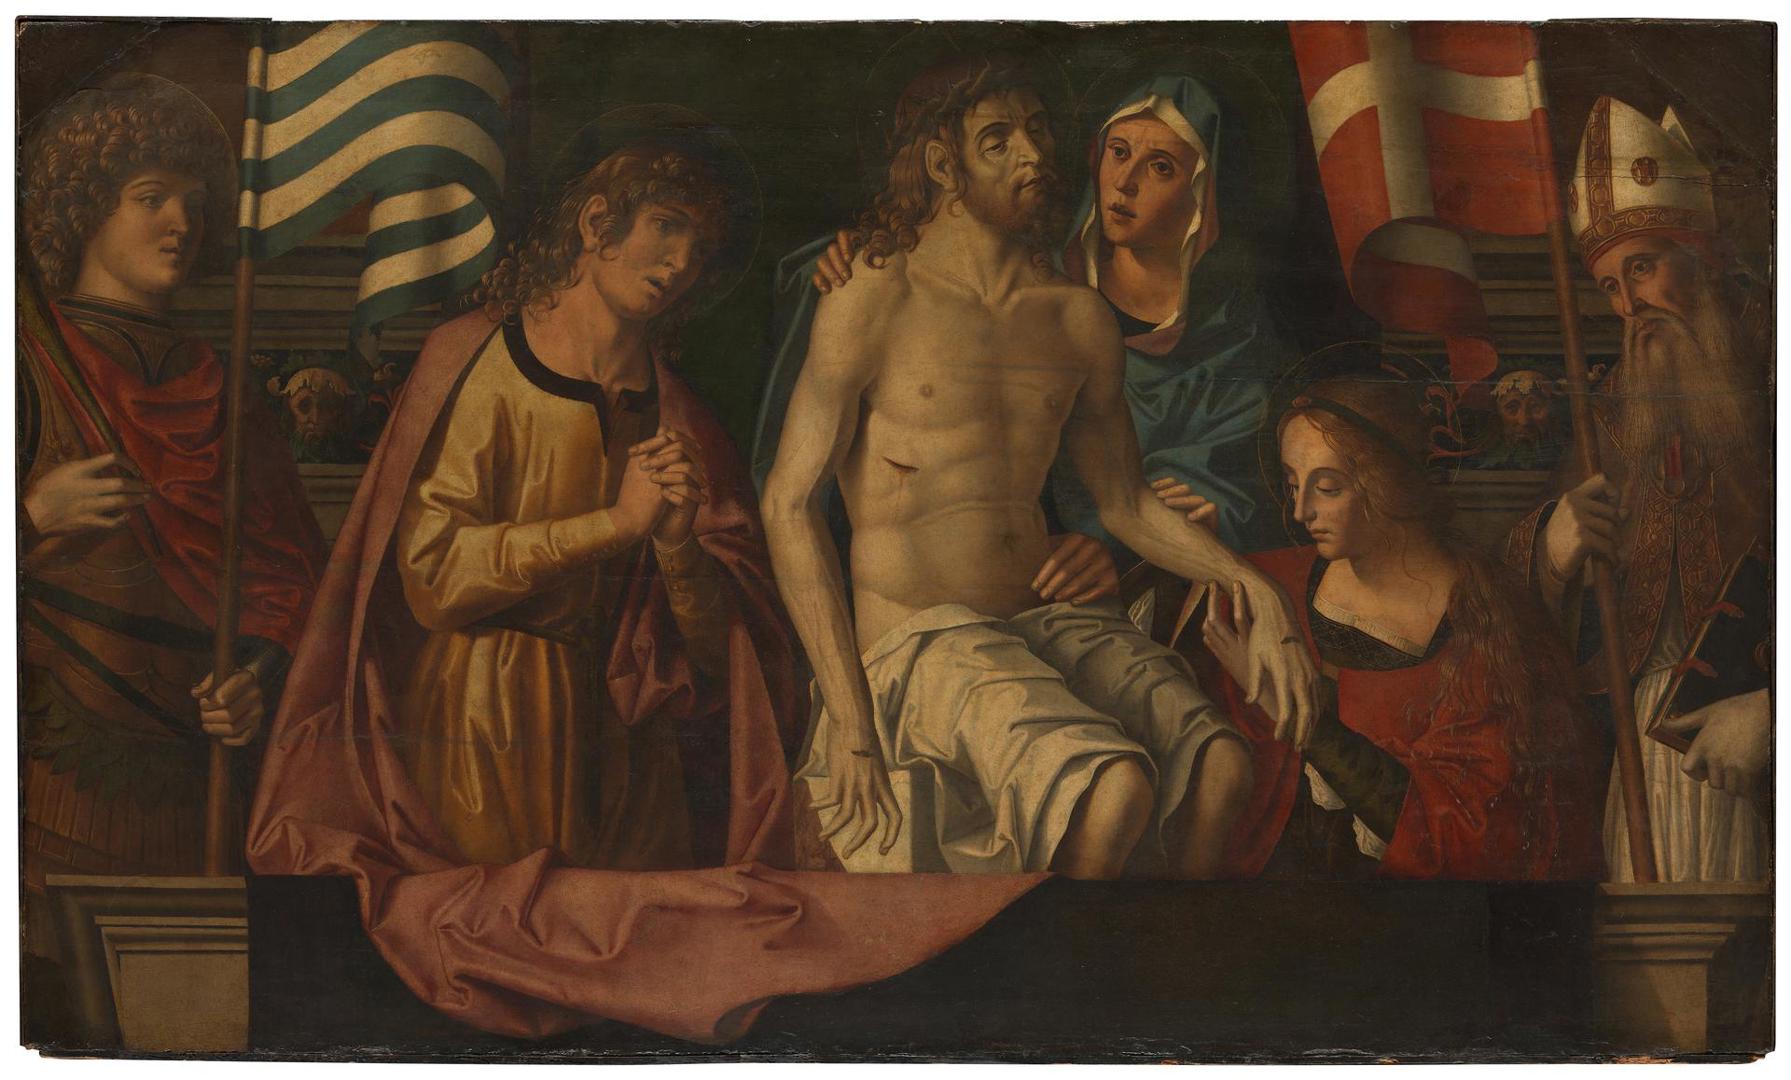 The Lamentation over the Dead Christ by Marco Palmezzano